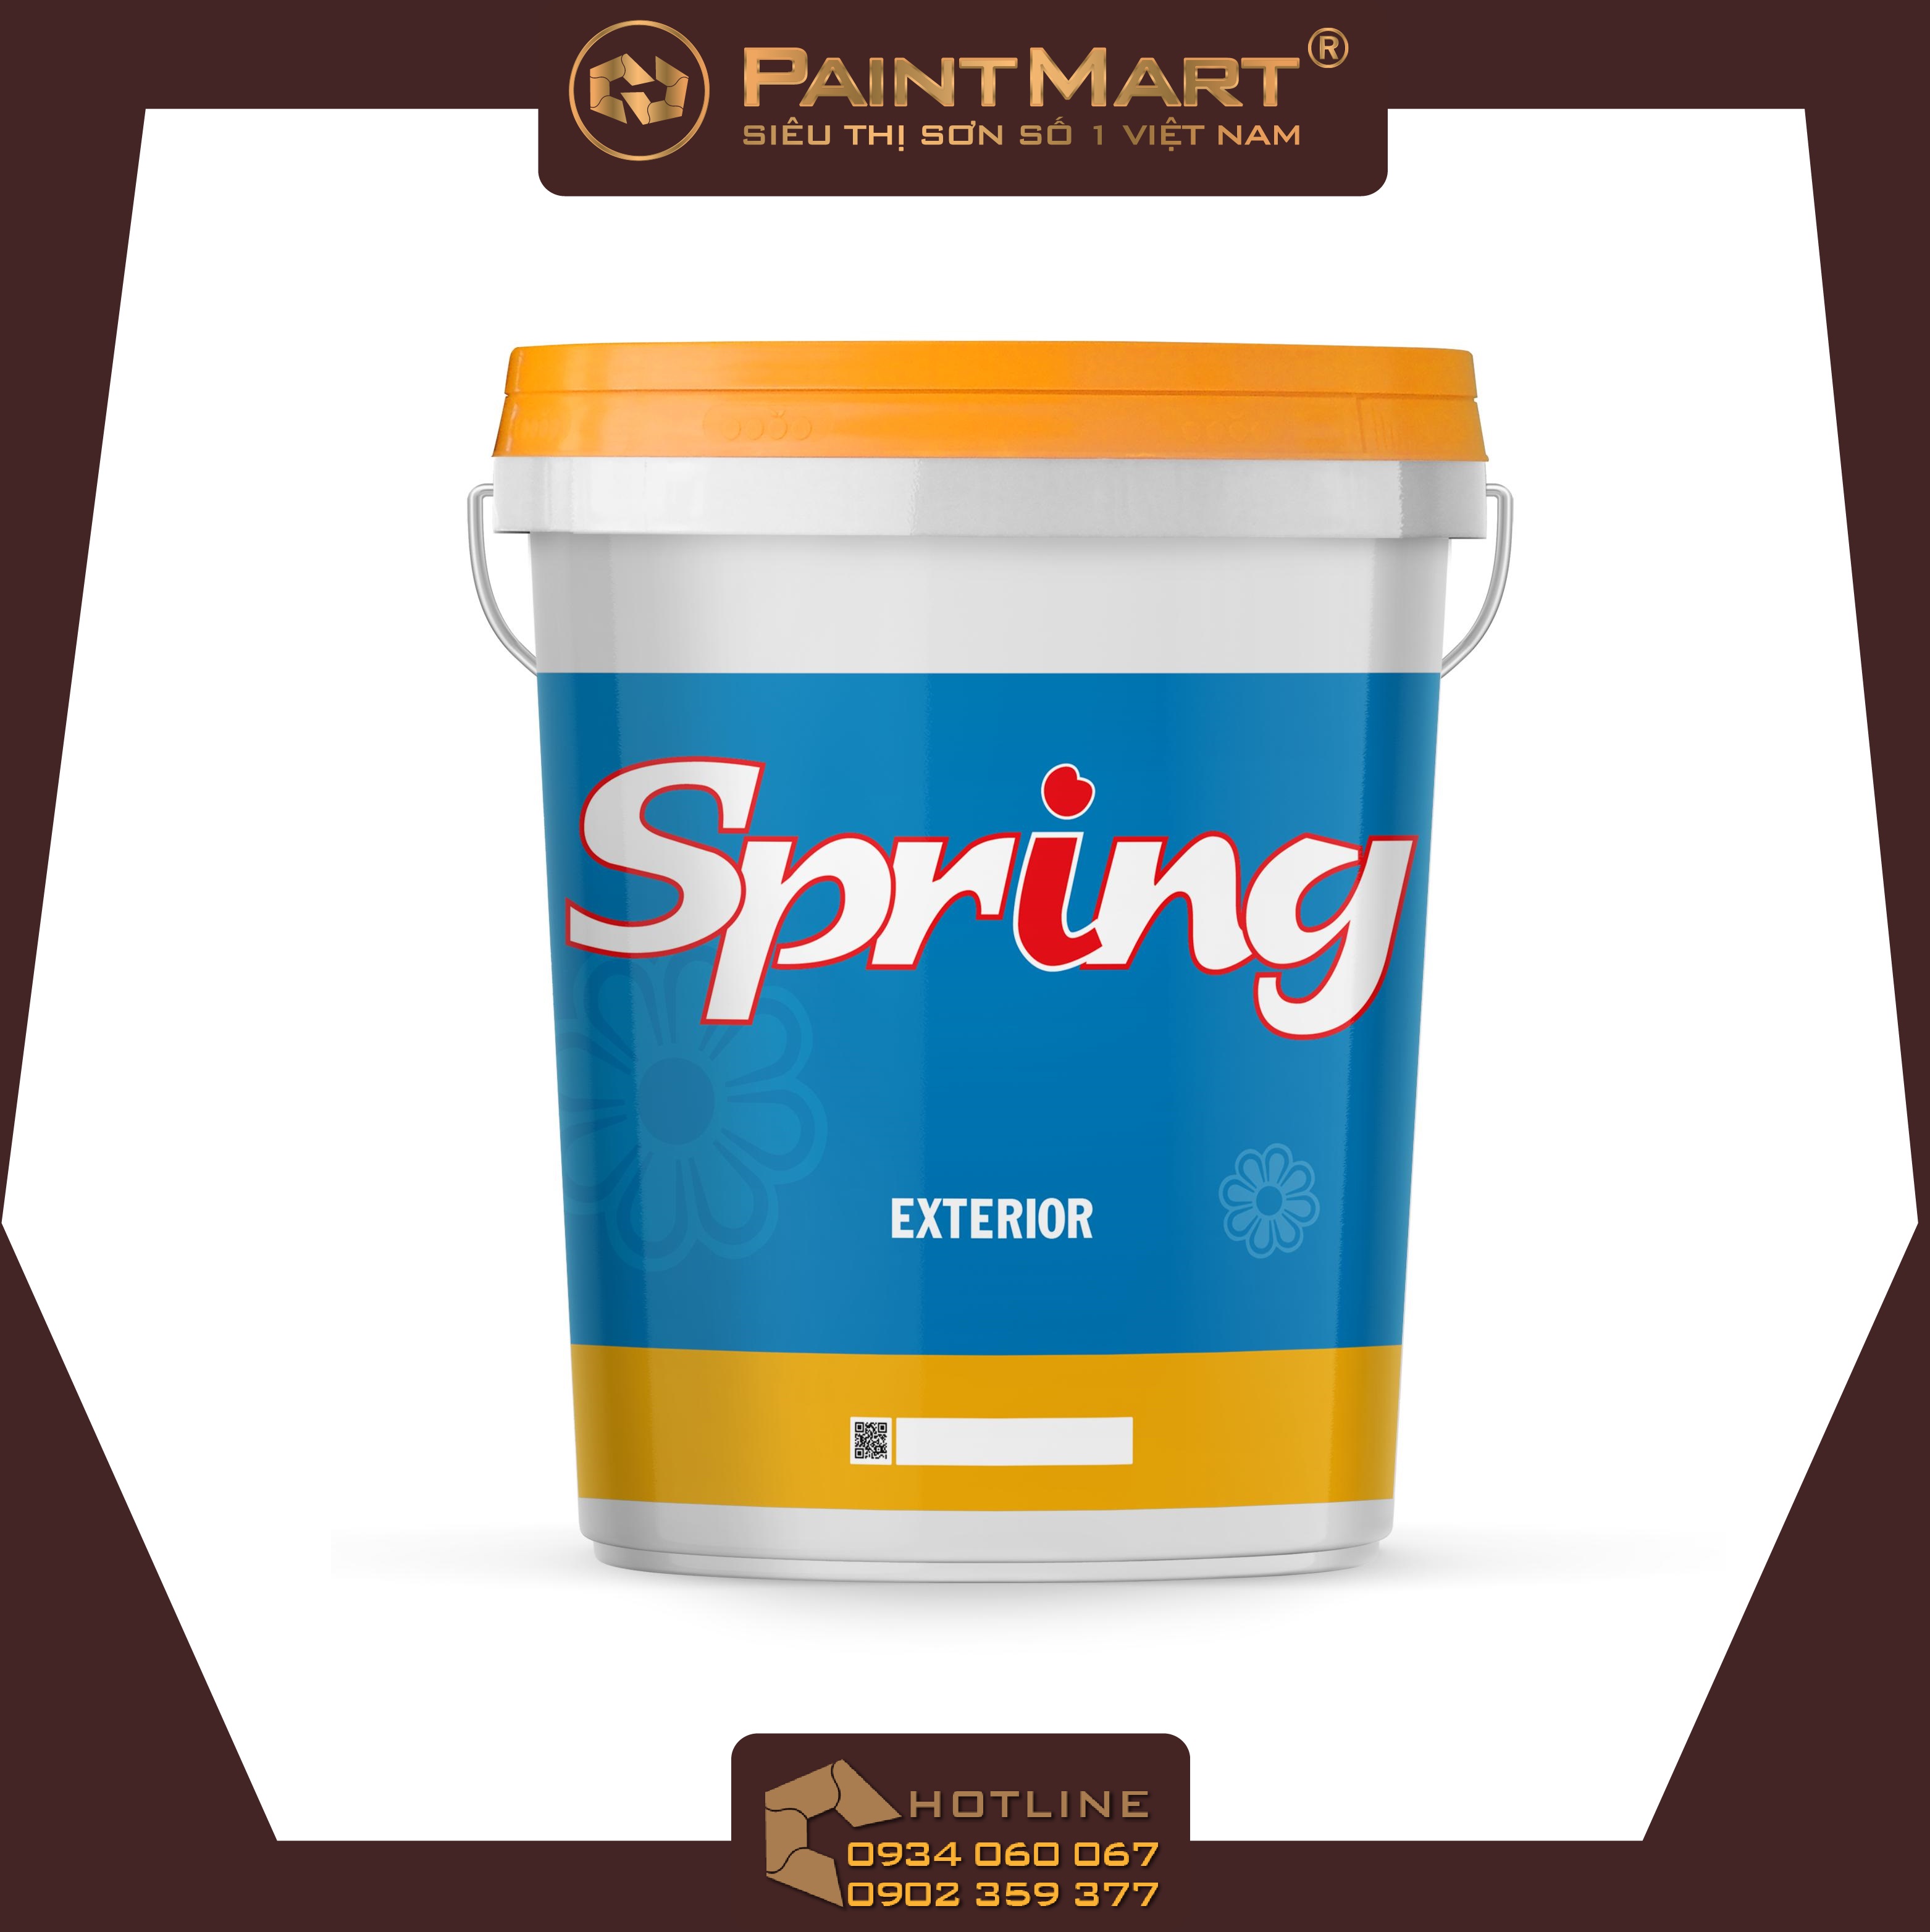 Sơn Boss Spring mang lại những sắc màu tươi trẻ và sinh động, giúp không gian sống của bạn trở nên tràn đầy năng lượng và sức sống. Hãy xem hình ảnh liên quan để thấy rõ sự khác biệt mà sơn Boss Spring mang lại.